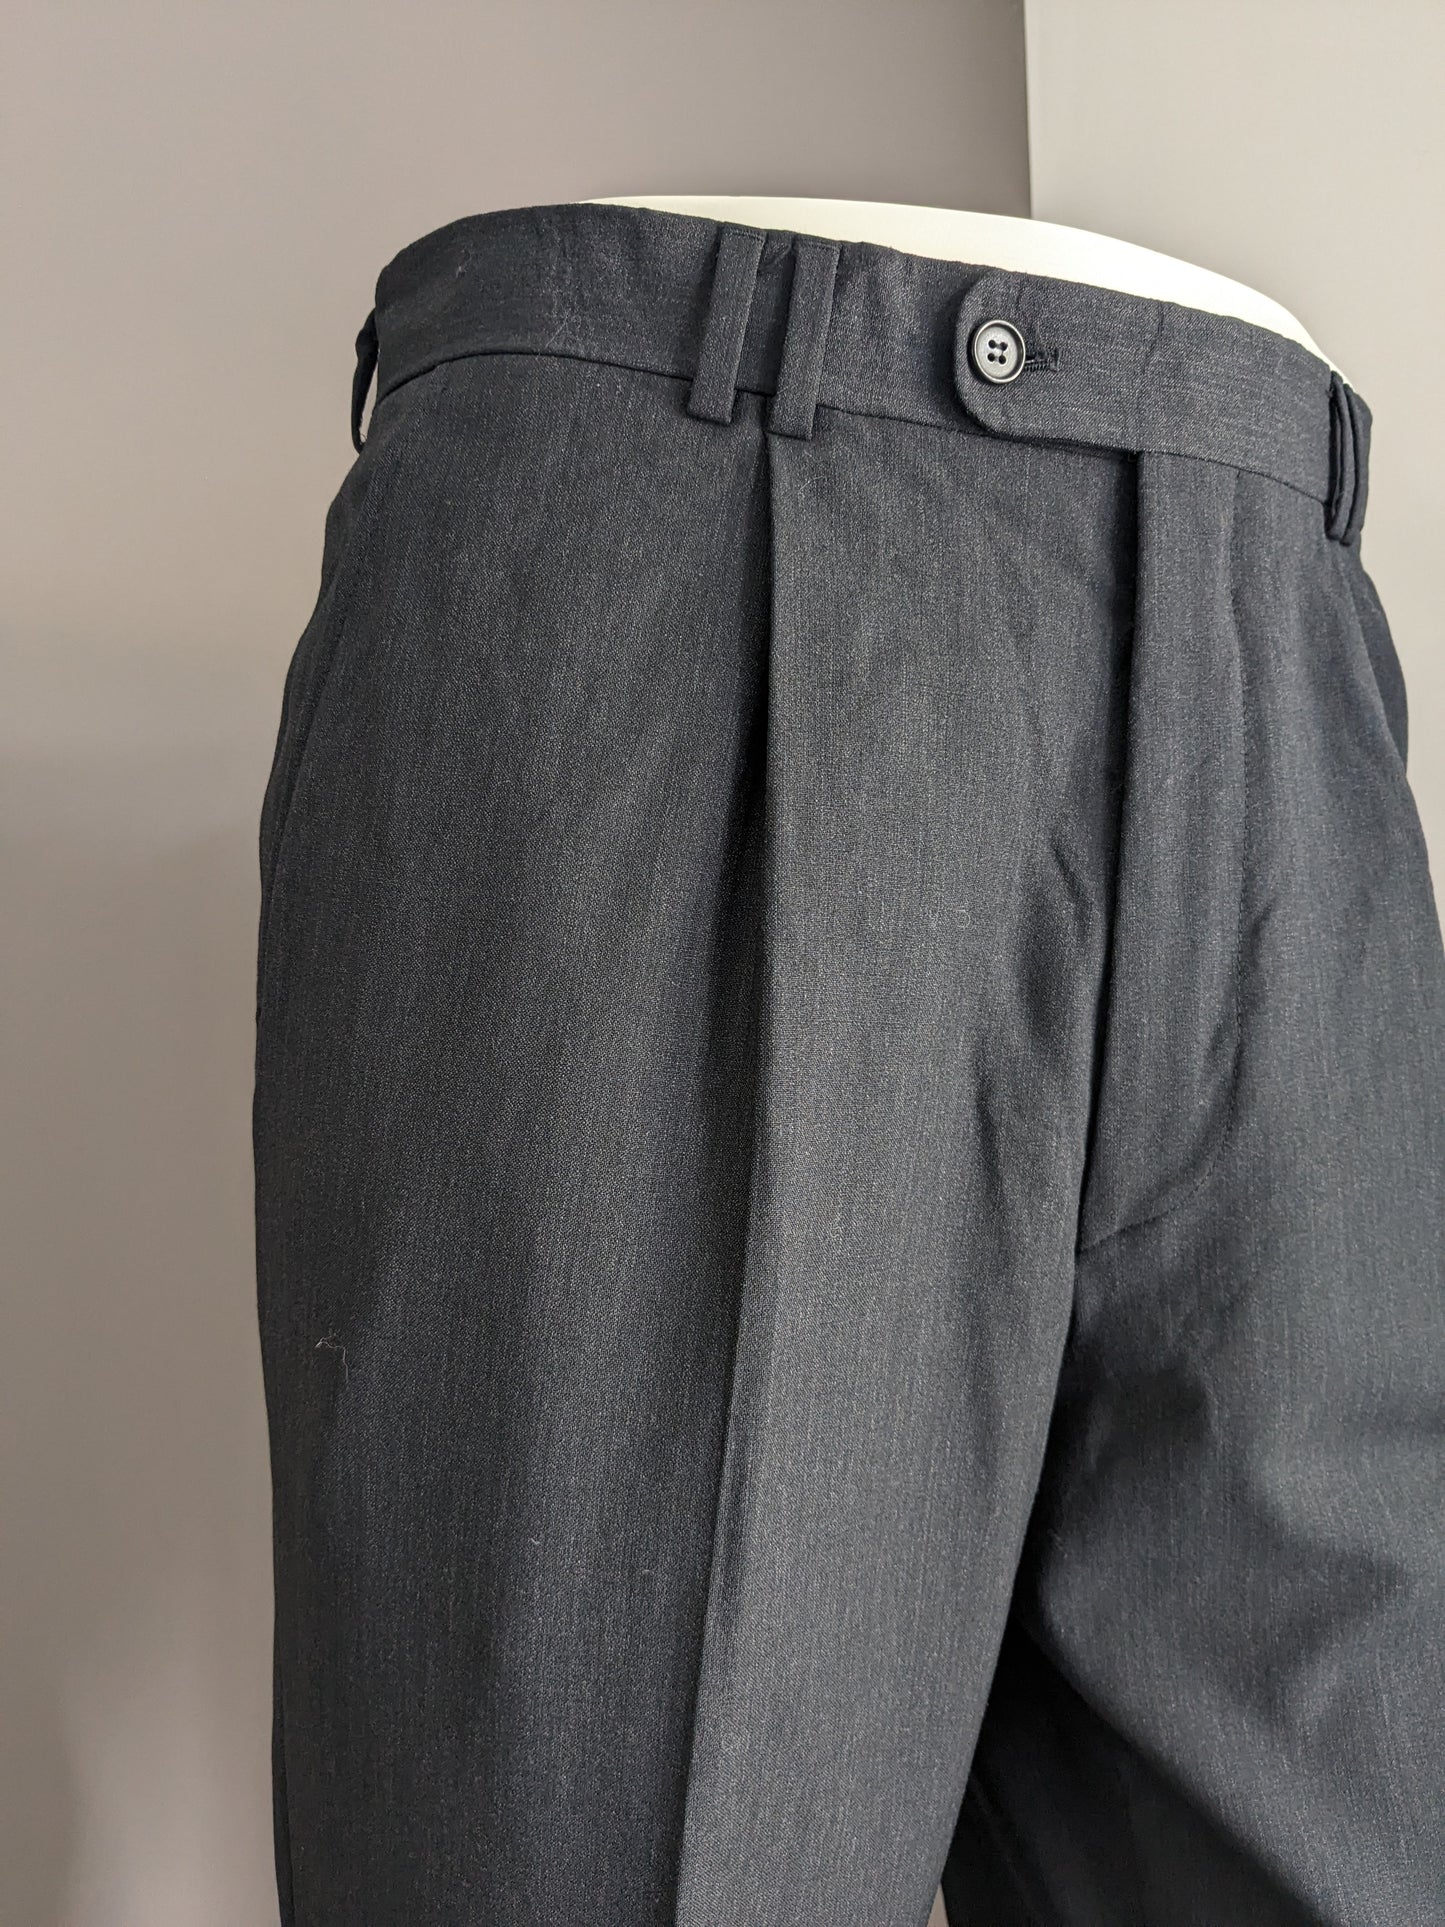 Pantalones con cubierta. Gris oscuro mezclado. Tamaño 52 / L. #501.